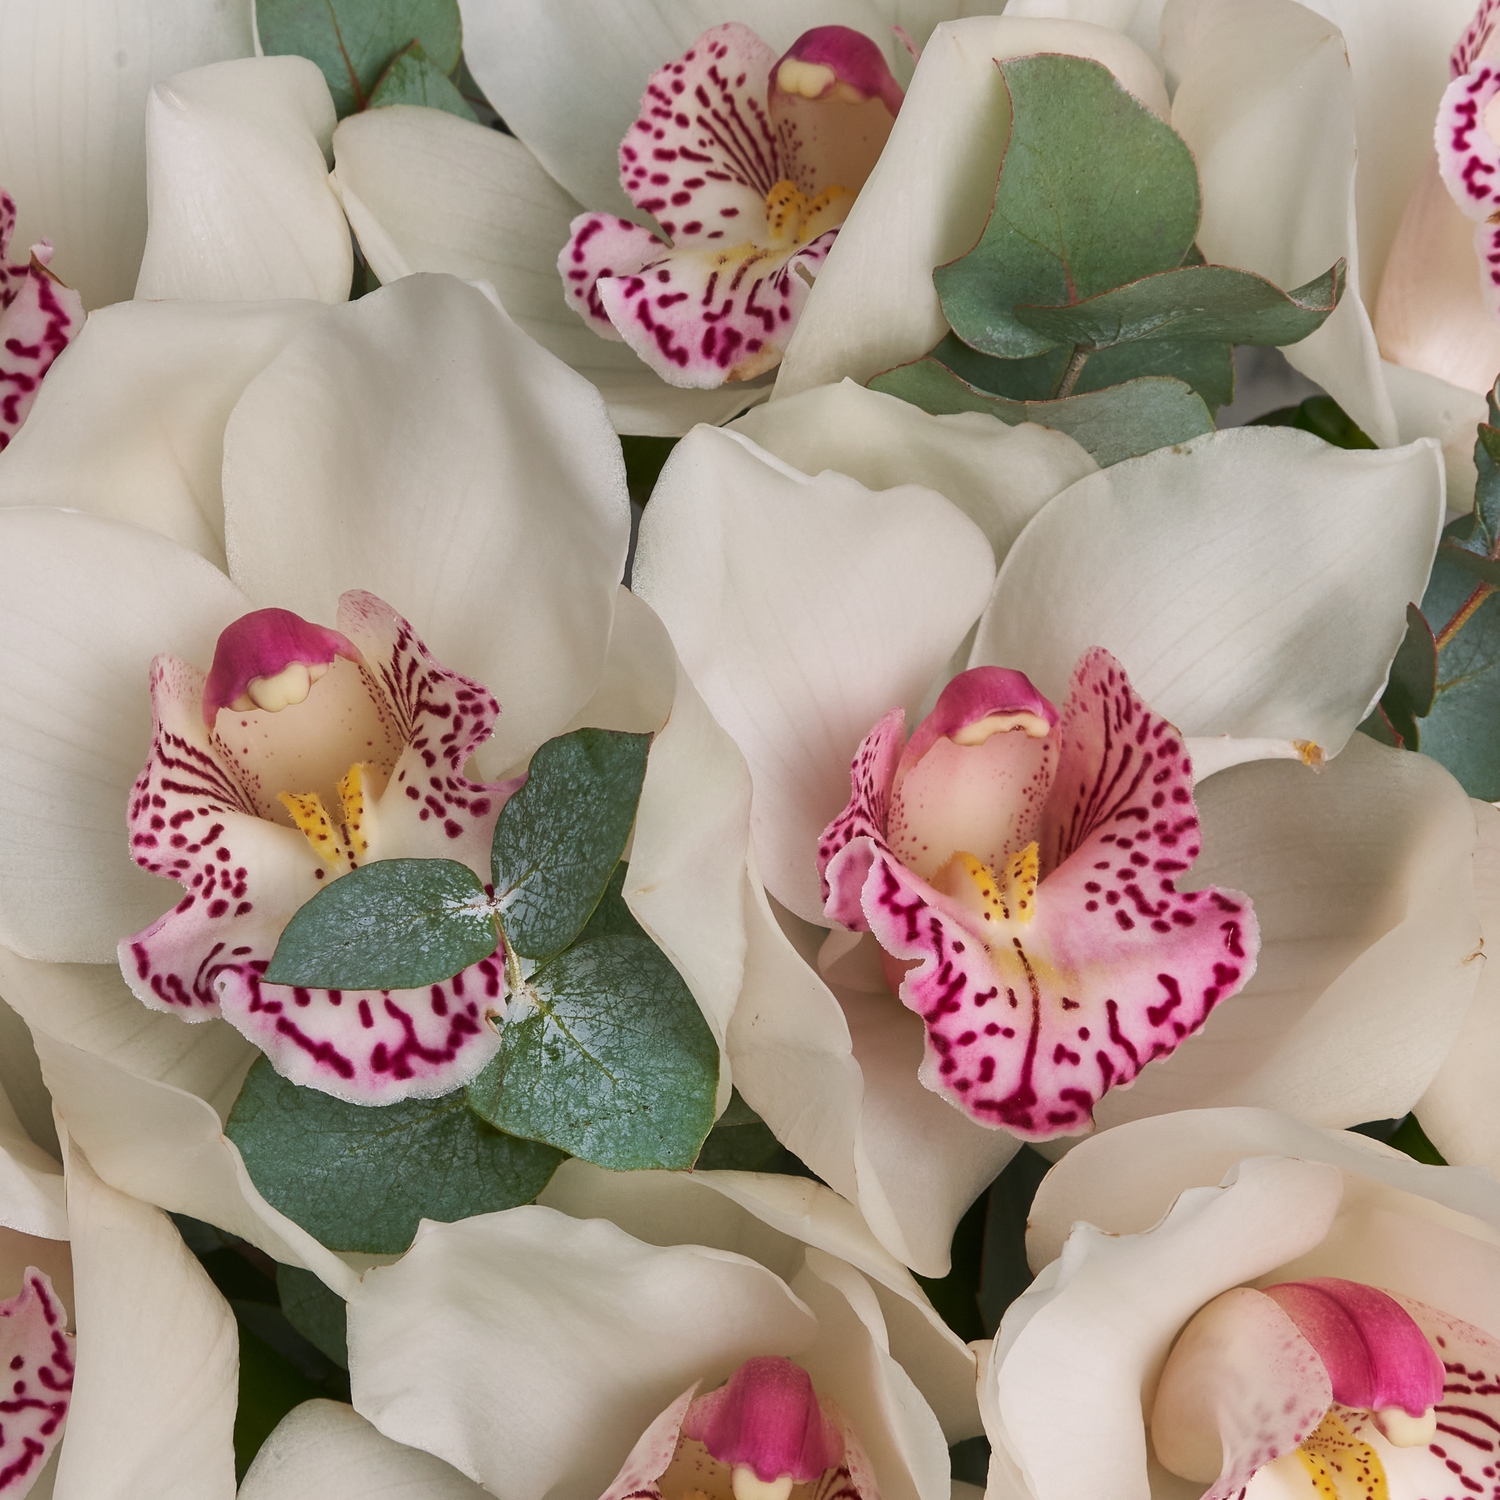 Букет белых орхидей с ароматным эвкалиптом